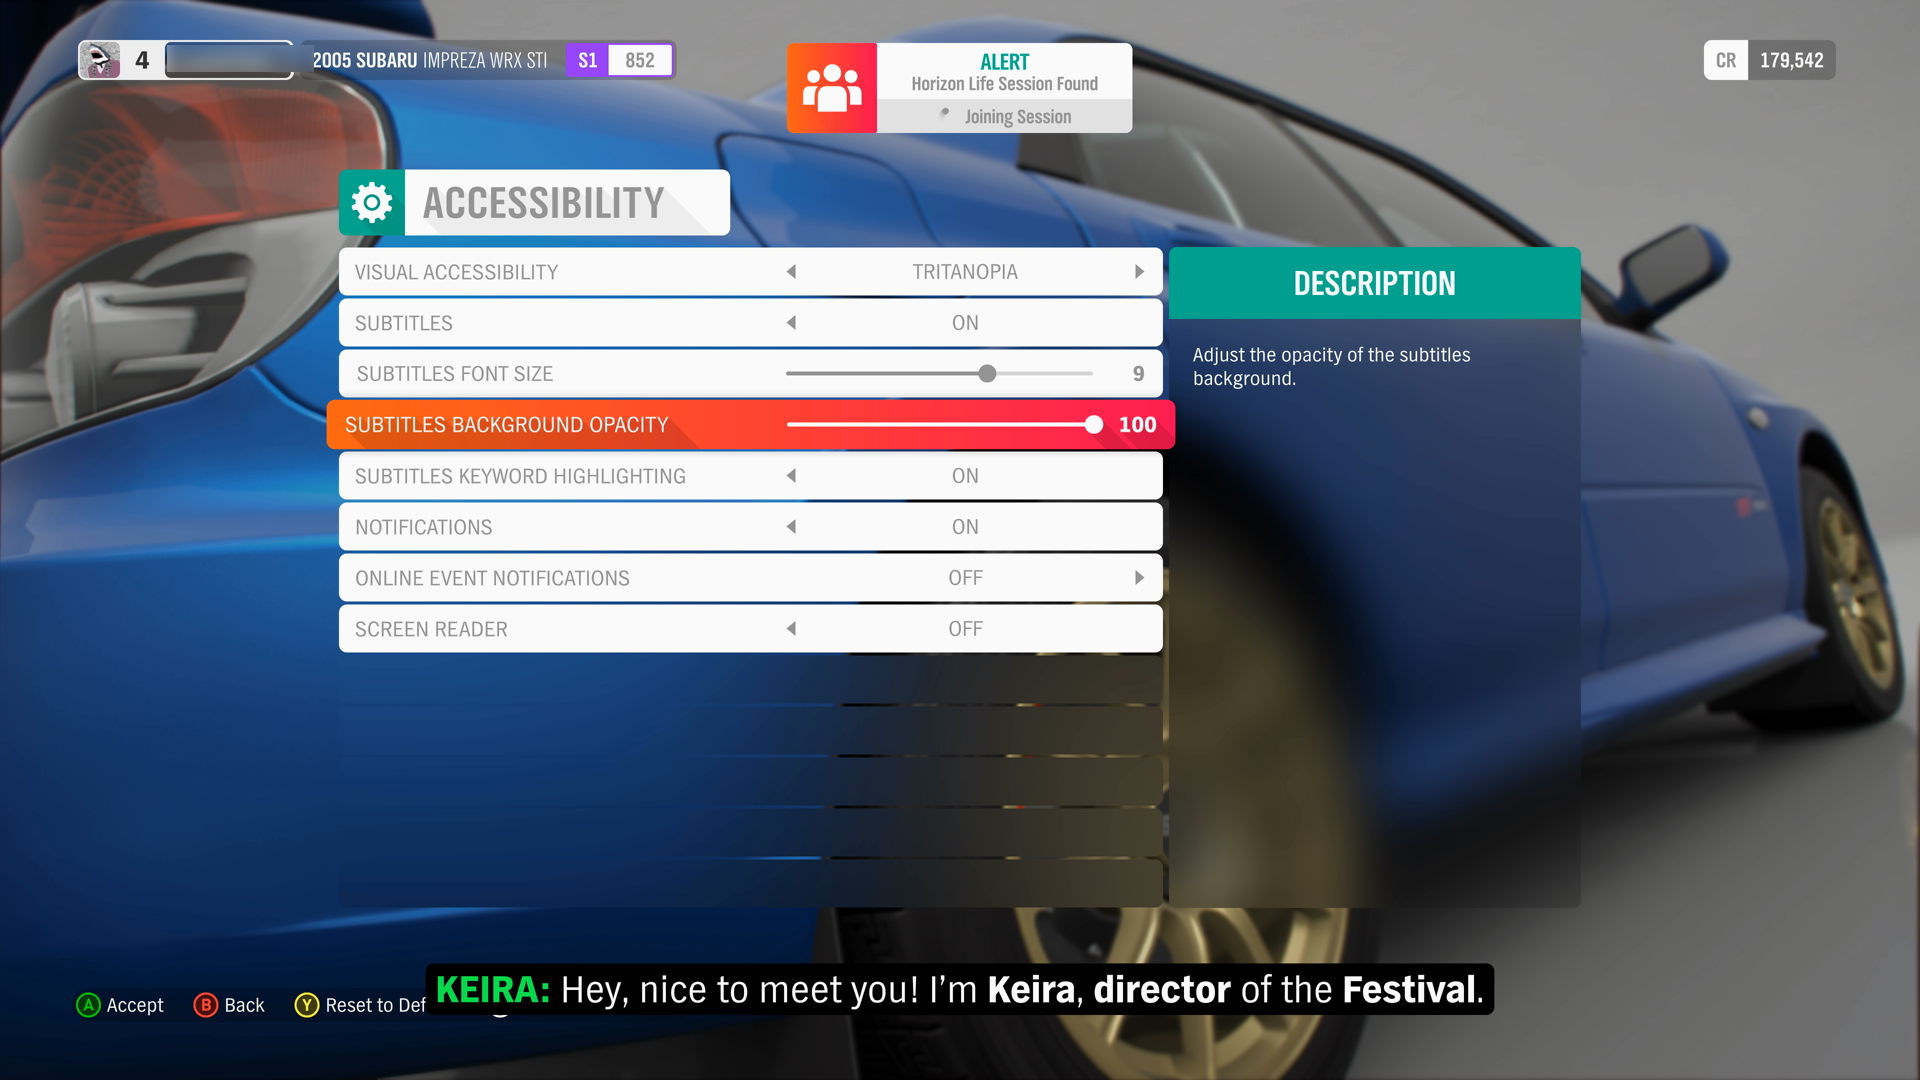 Forza Horizon 4 접근성 설정 메뉴의 스크린샷. 자막 배경 불투명도 슬라이더가 강조 표시됩니다. 값은 100%입니다. 화면 아래쪽에 자막이 어떻게 표시되는지 미리 볼 수 있습니다.